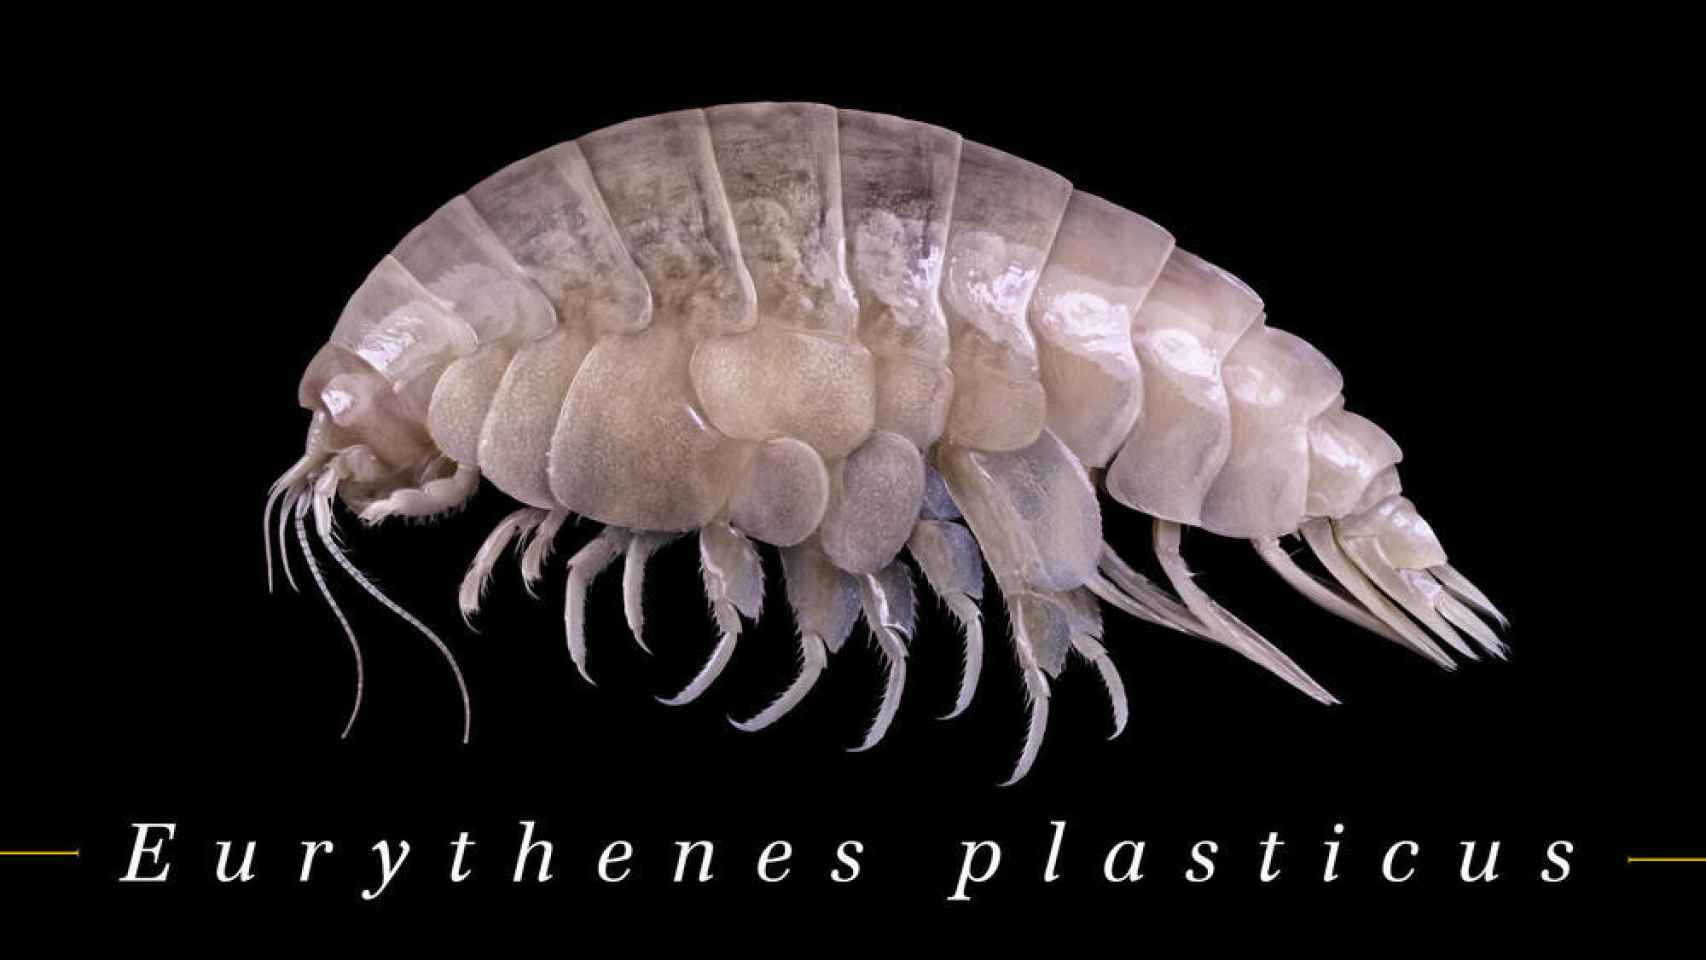 La nueva especie, Eurythenes plasticus, descubierta en la fosa cuyo cuerpo ya estaba contaminado con microplásticos.